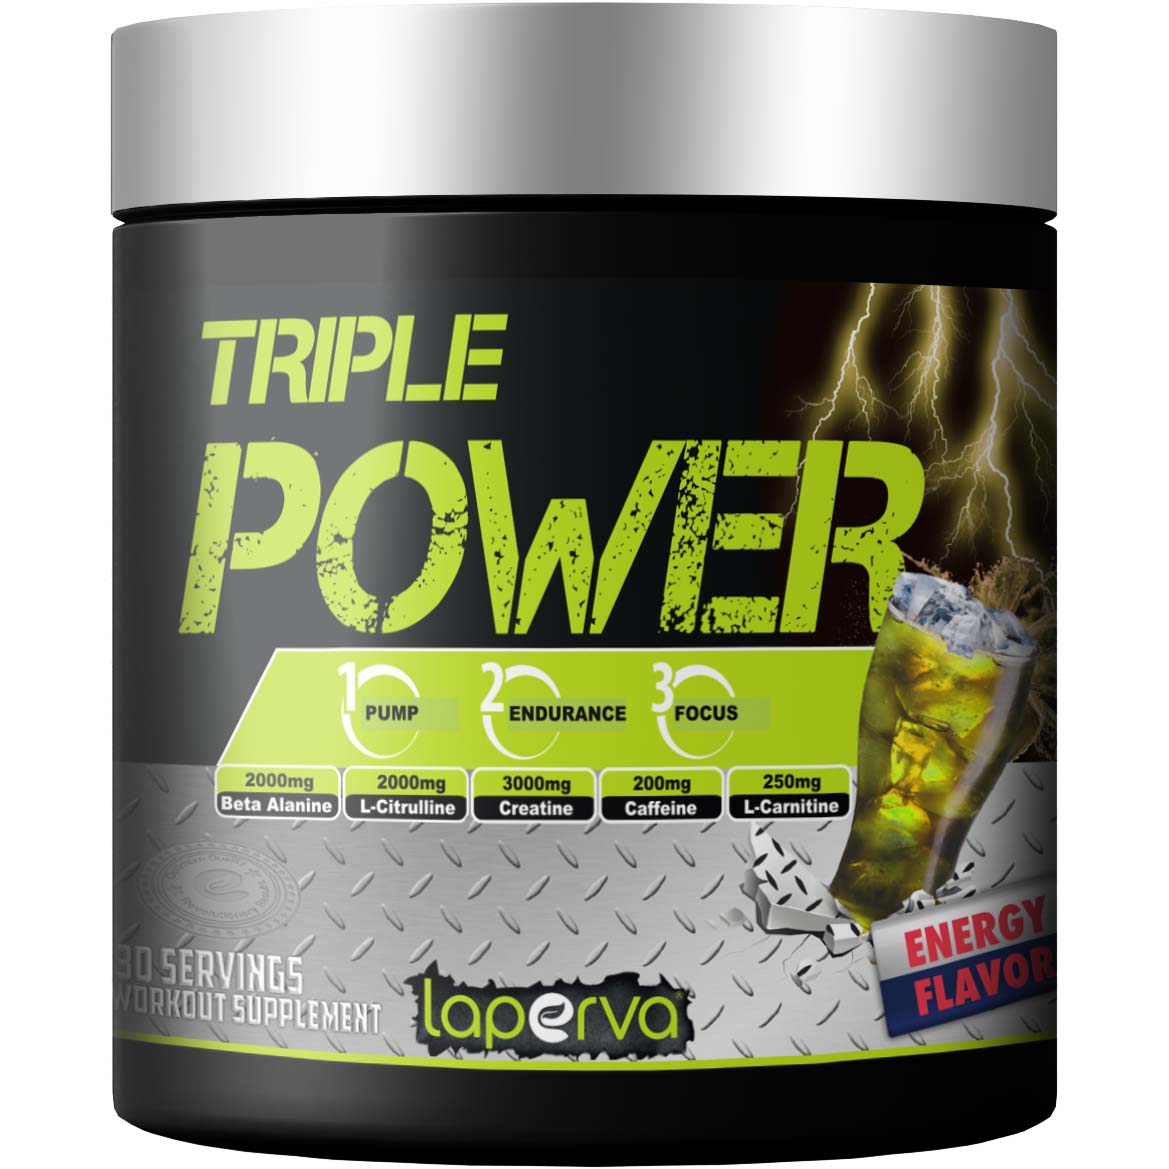 Laperva Triple Power Pre-Workout 30 Energy Flavour